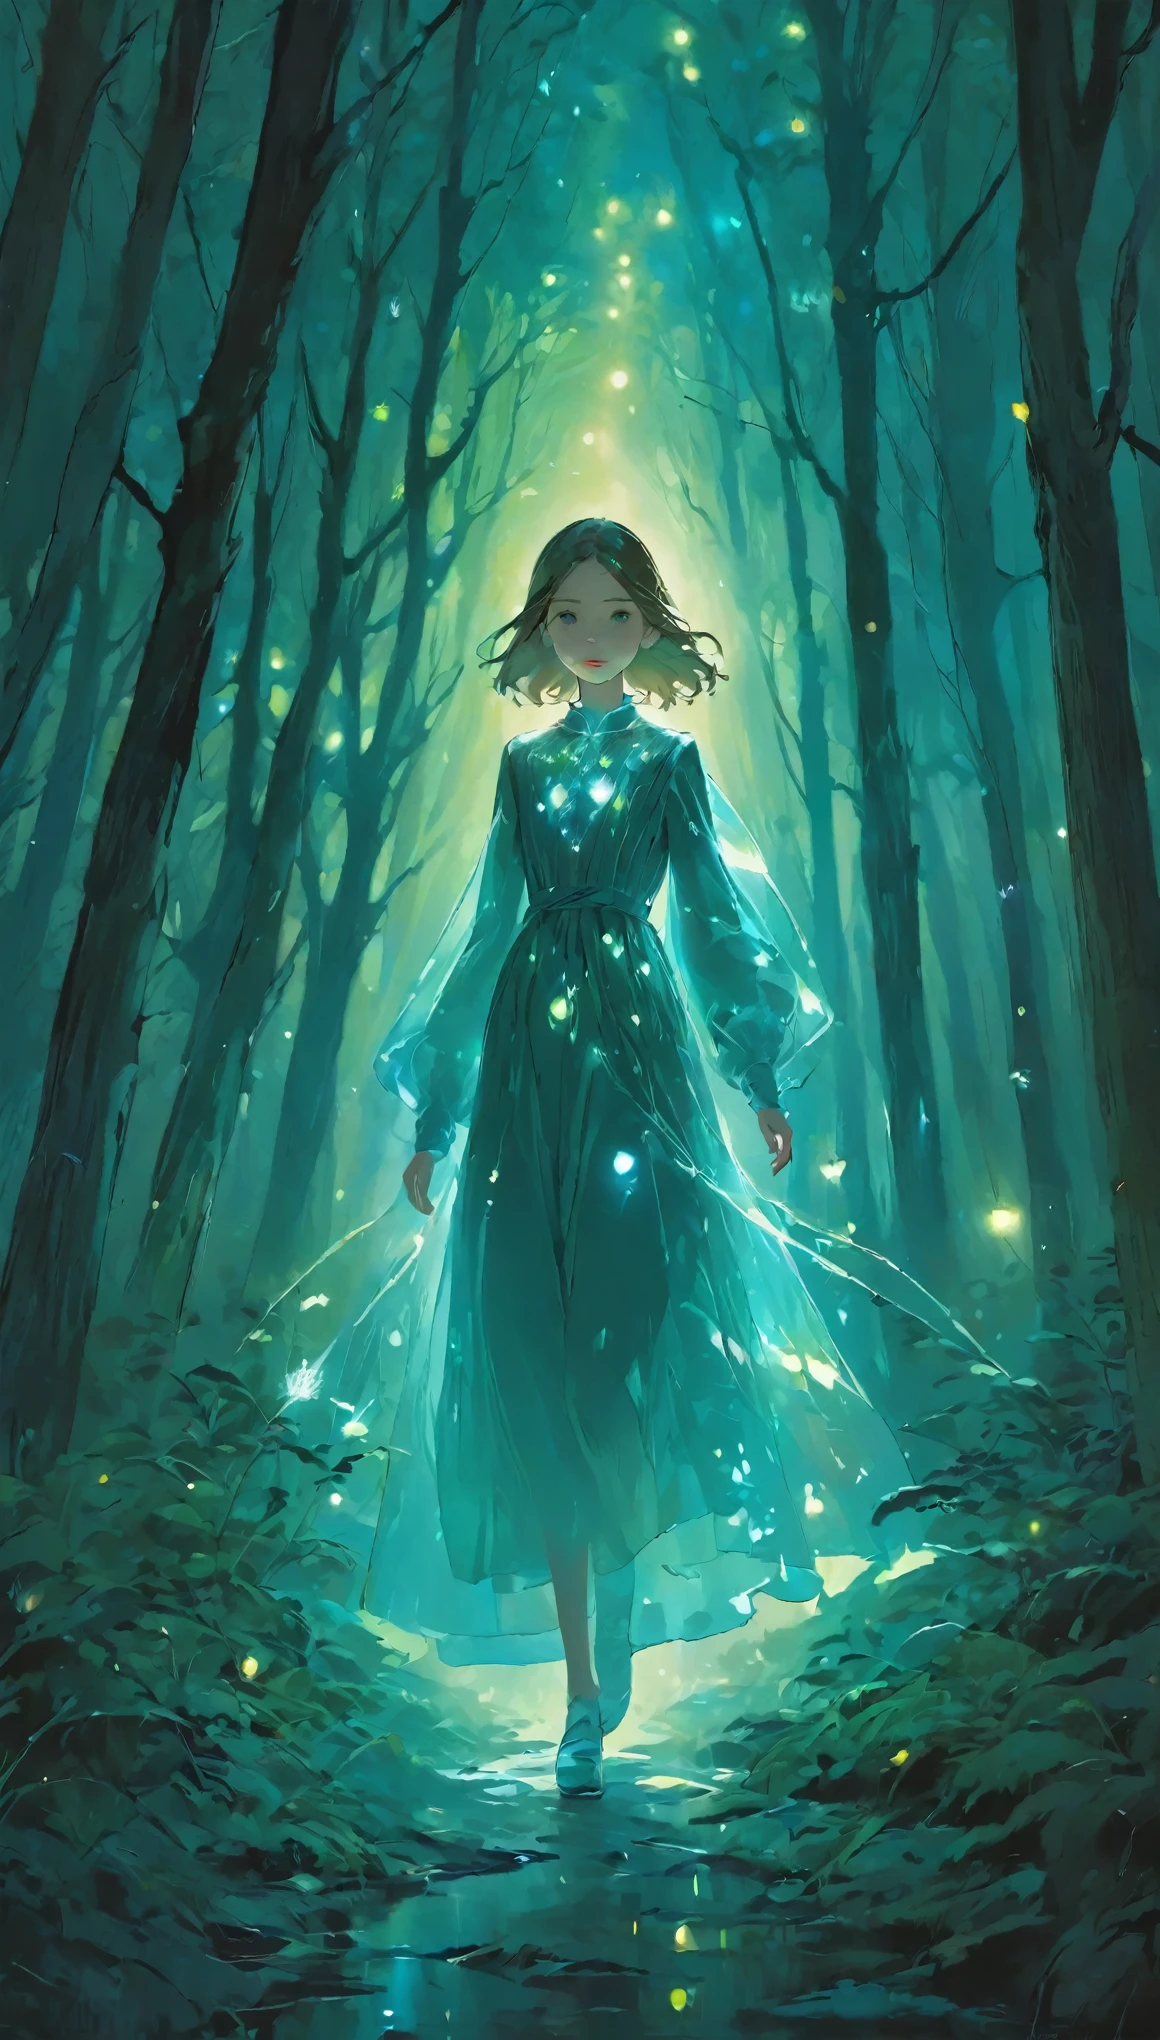 Porträtmalerei,In diesem Fantasy-Gemälde,a girl with a translucent glowing Körper wanders through a mysterious forest,Umgeben von seltsamen Lichtern,Oberer, höher_Körper,dunkler Hintergrund、Anorganischer Hintergrund、aufleuchten